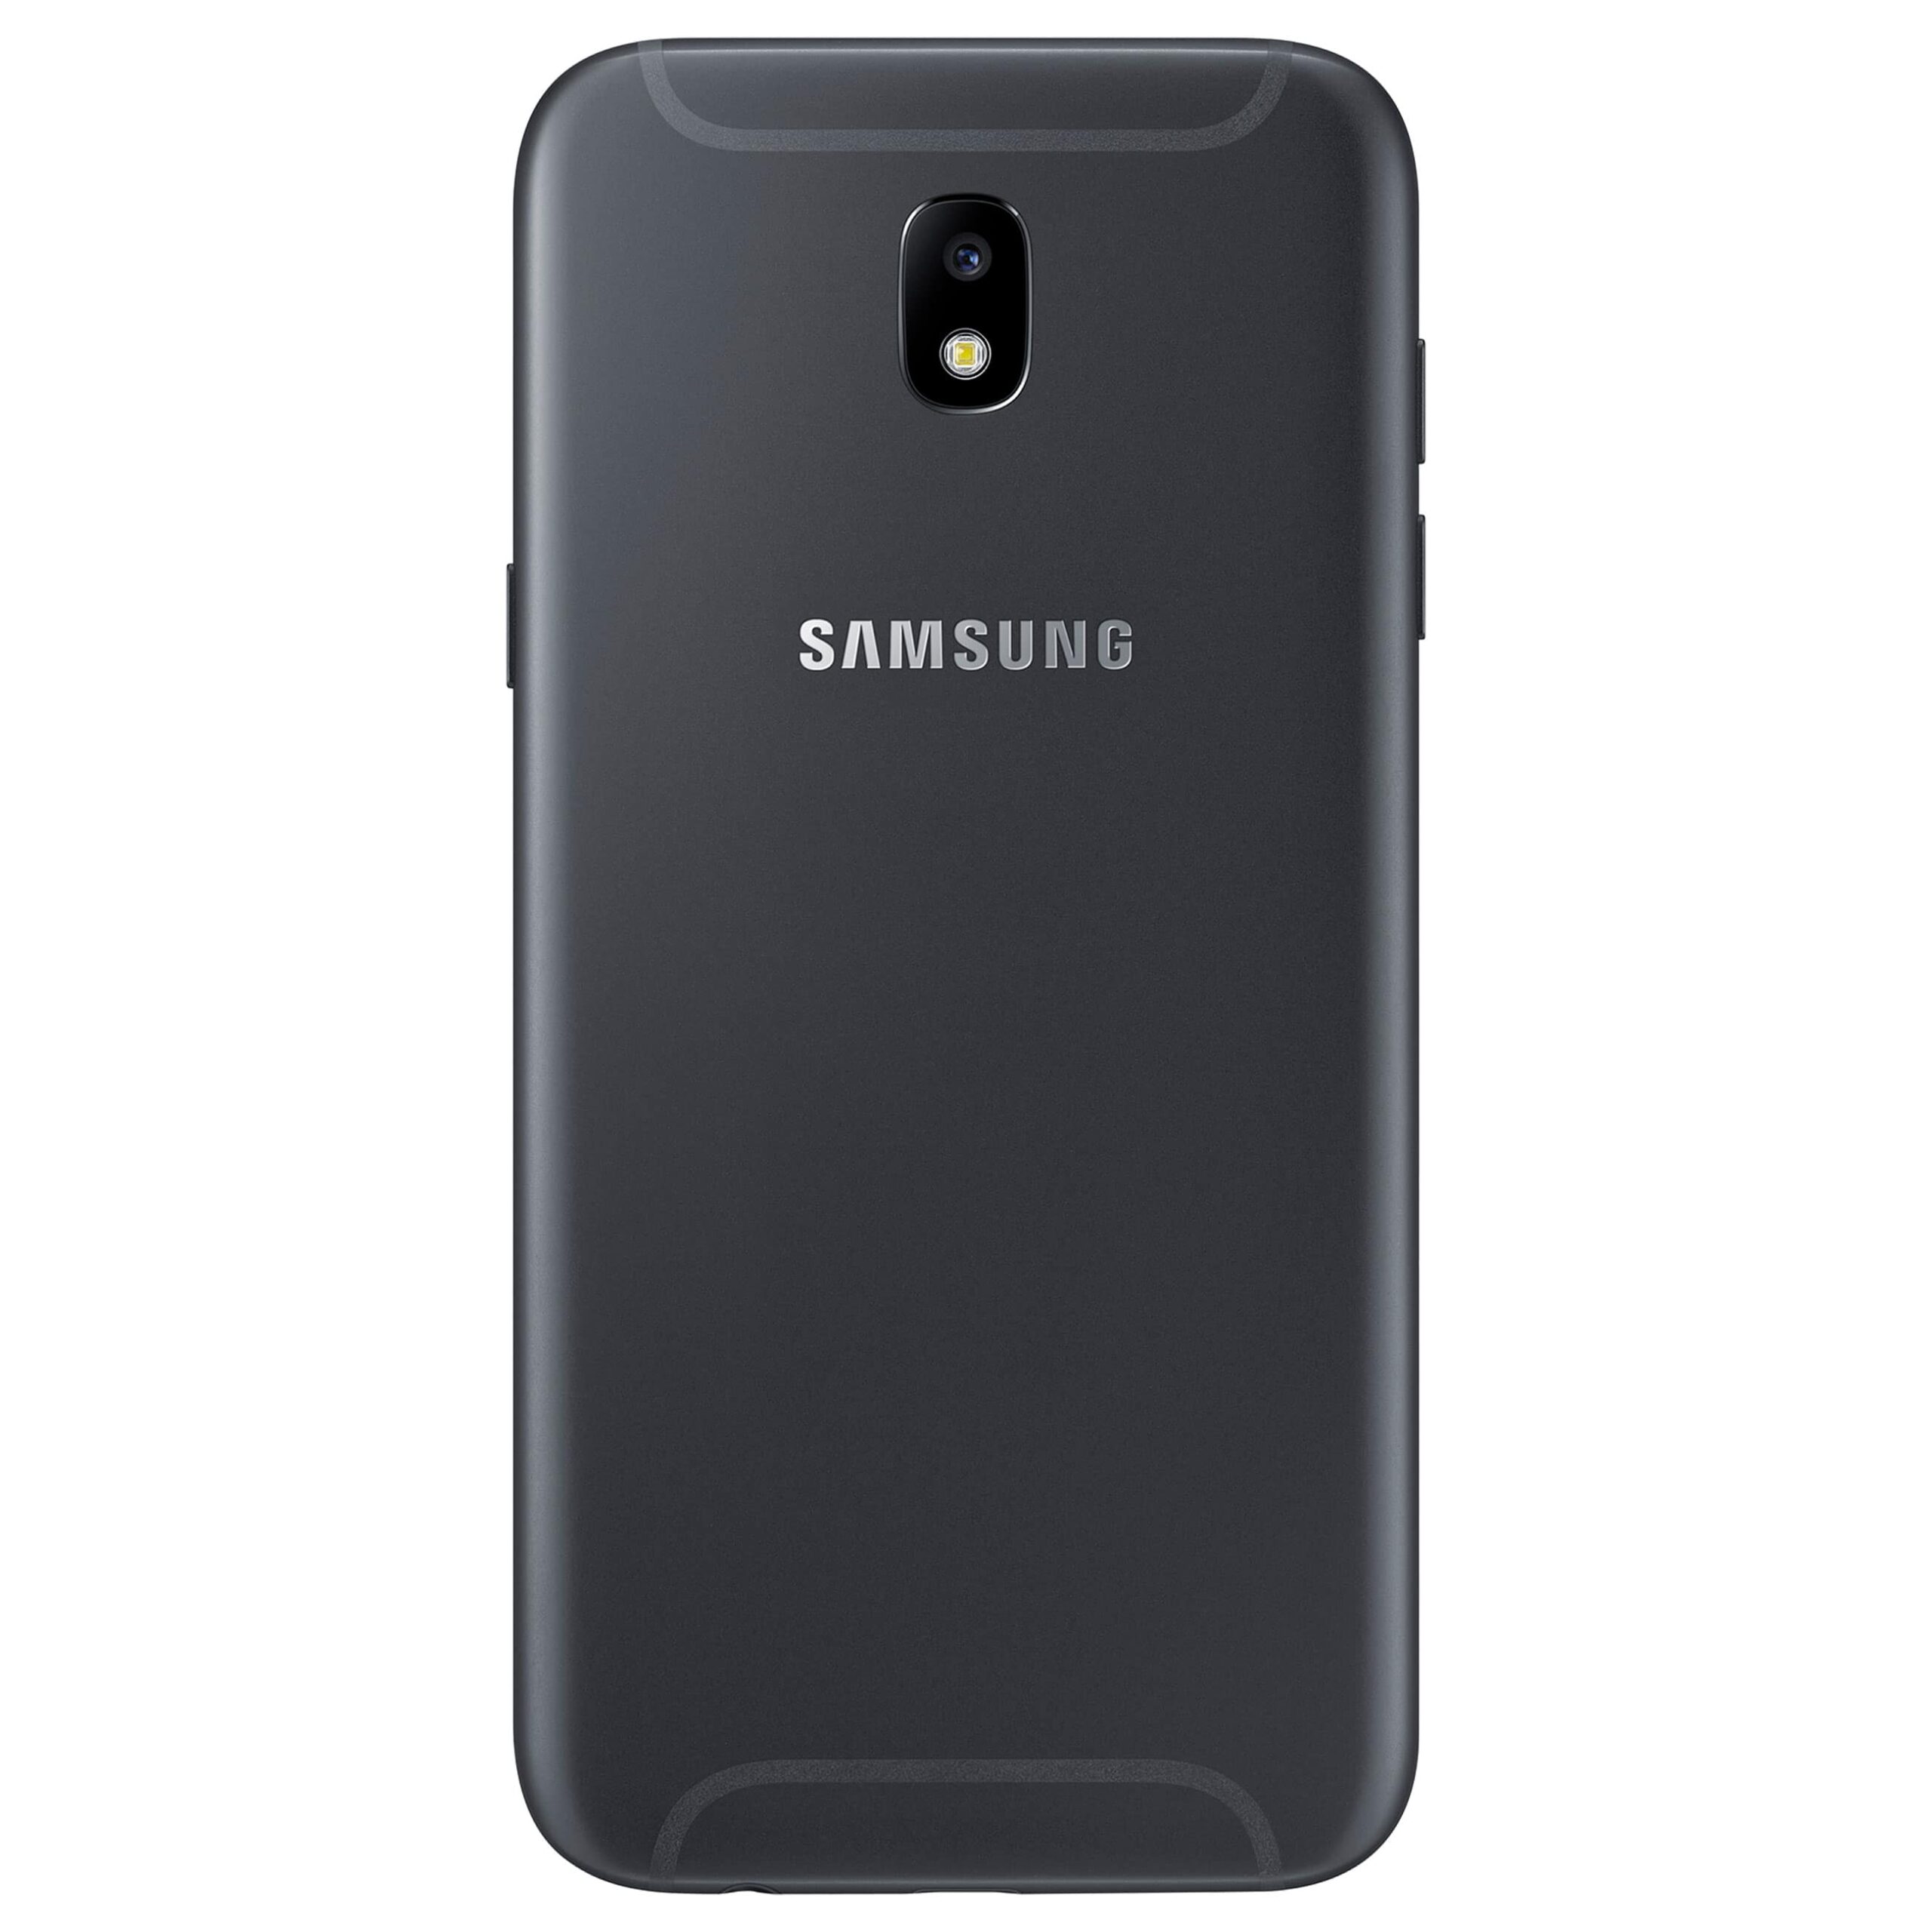 Samsung Galaxy J5 (2017)Sehr gut – AfB-refurbished